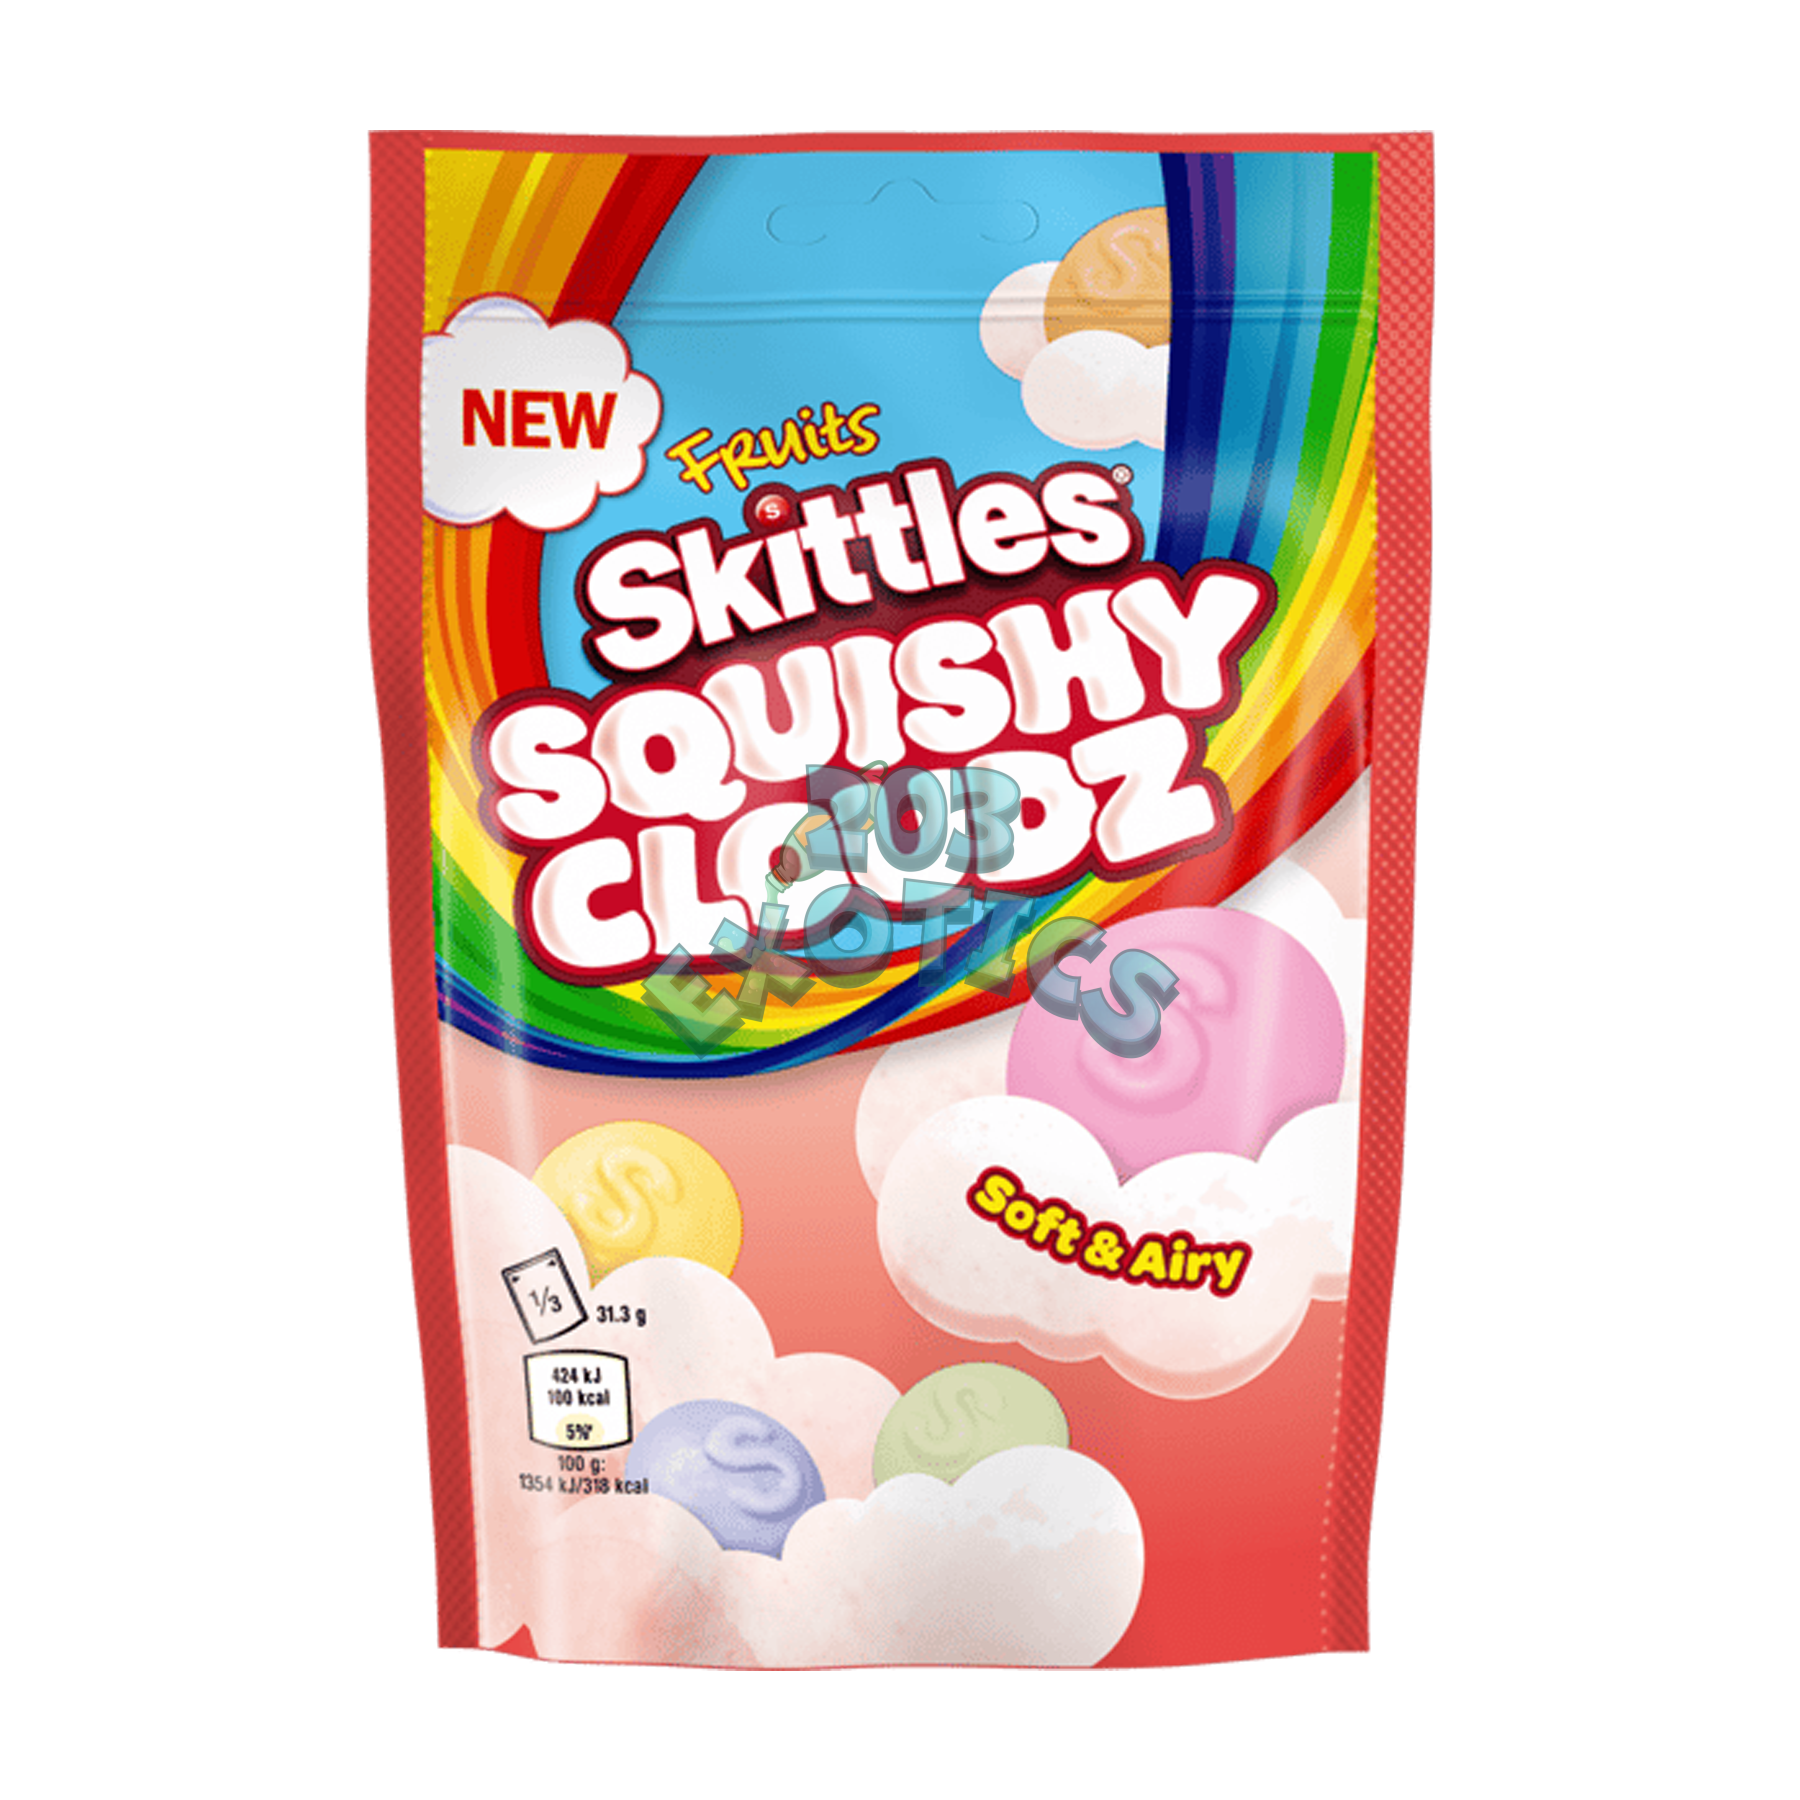 Skittles Squishy Cloudz Fruits (Uk)